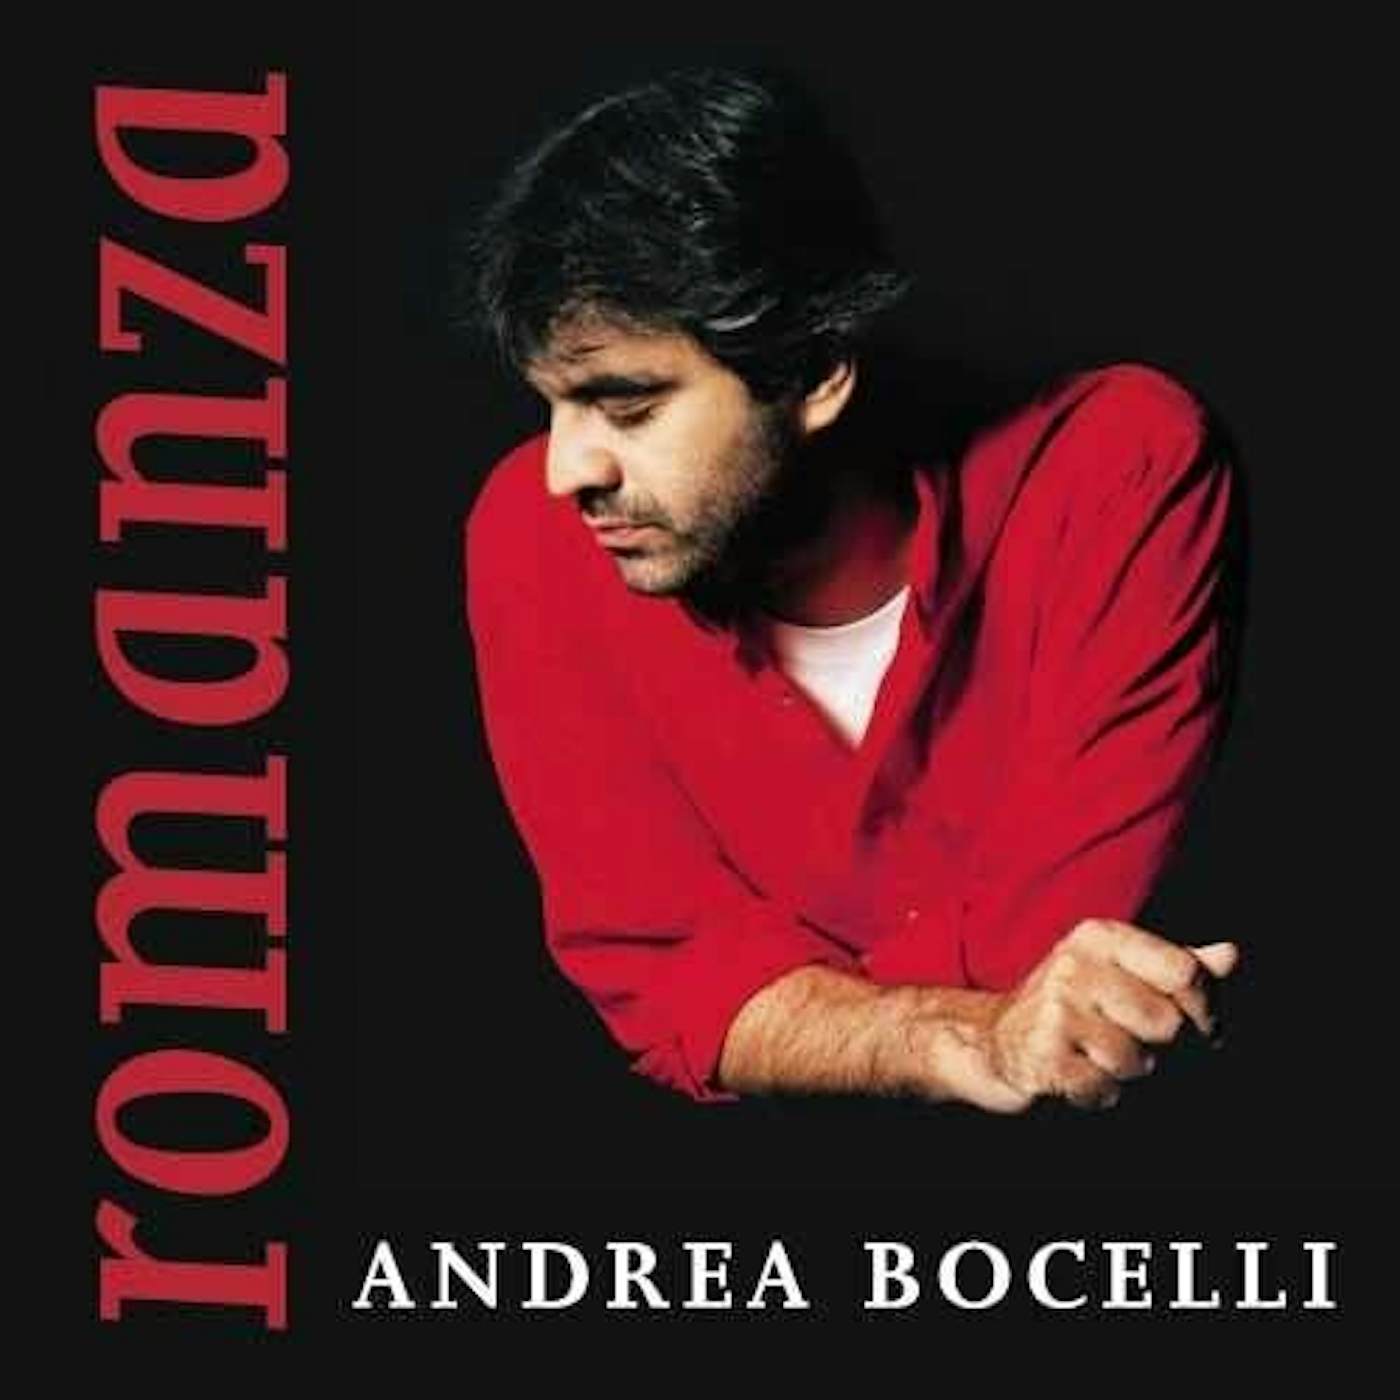 Andrea Bocelli Romanza Vinyl Record